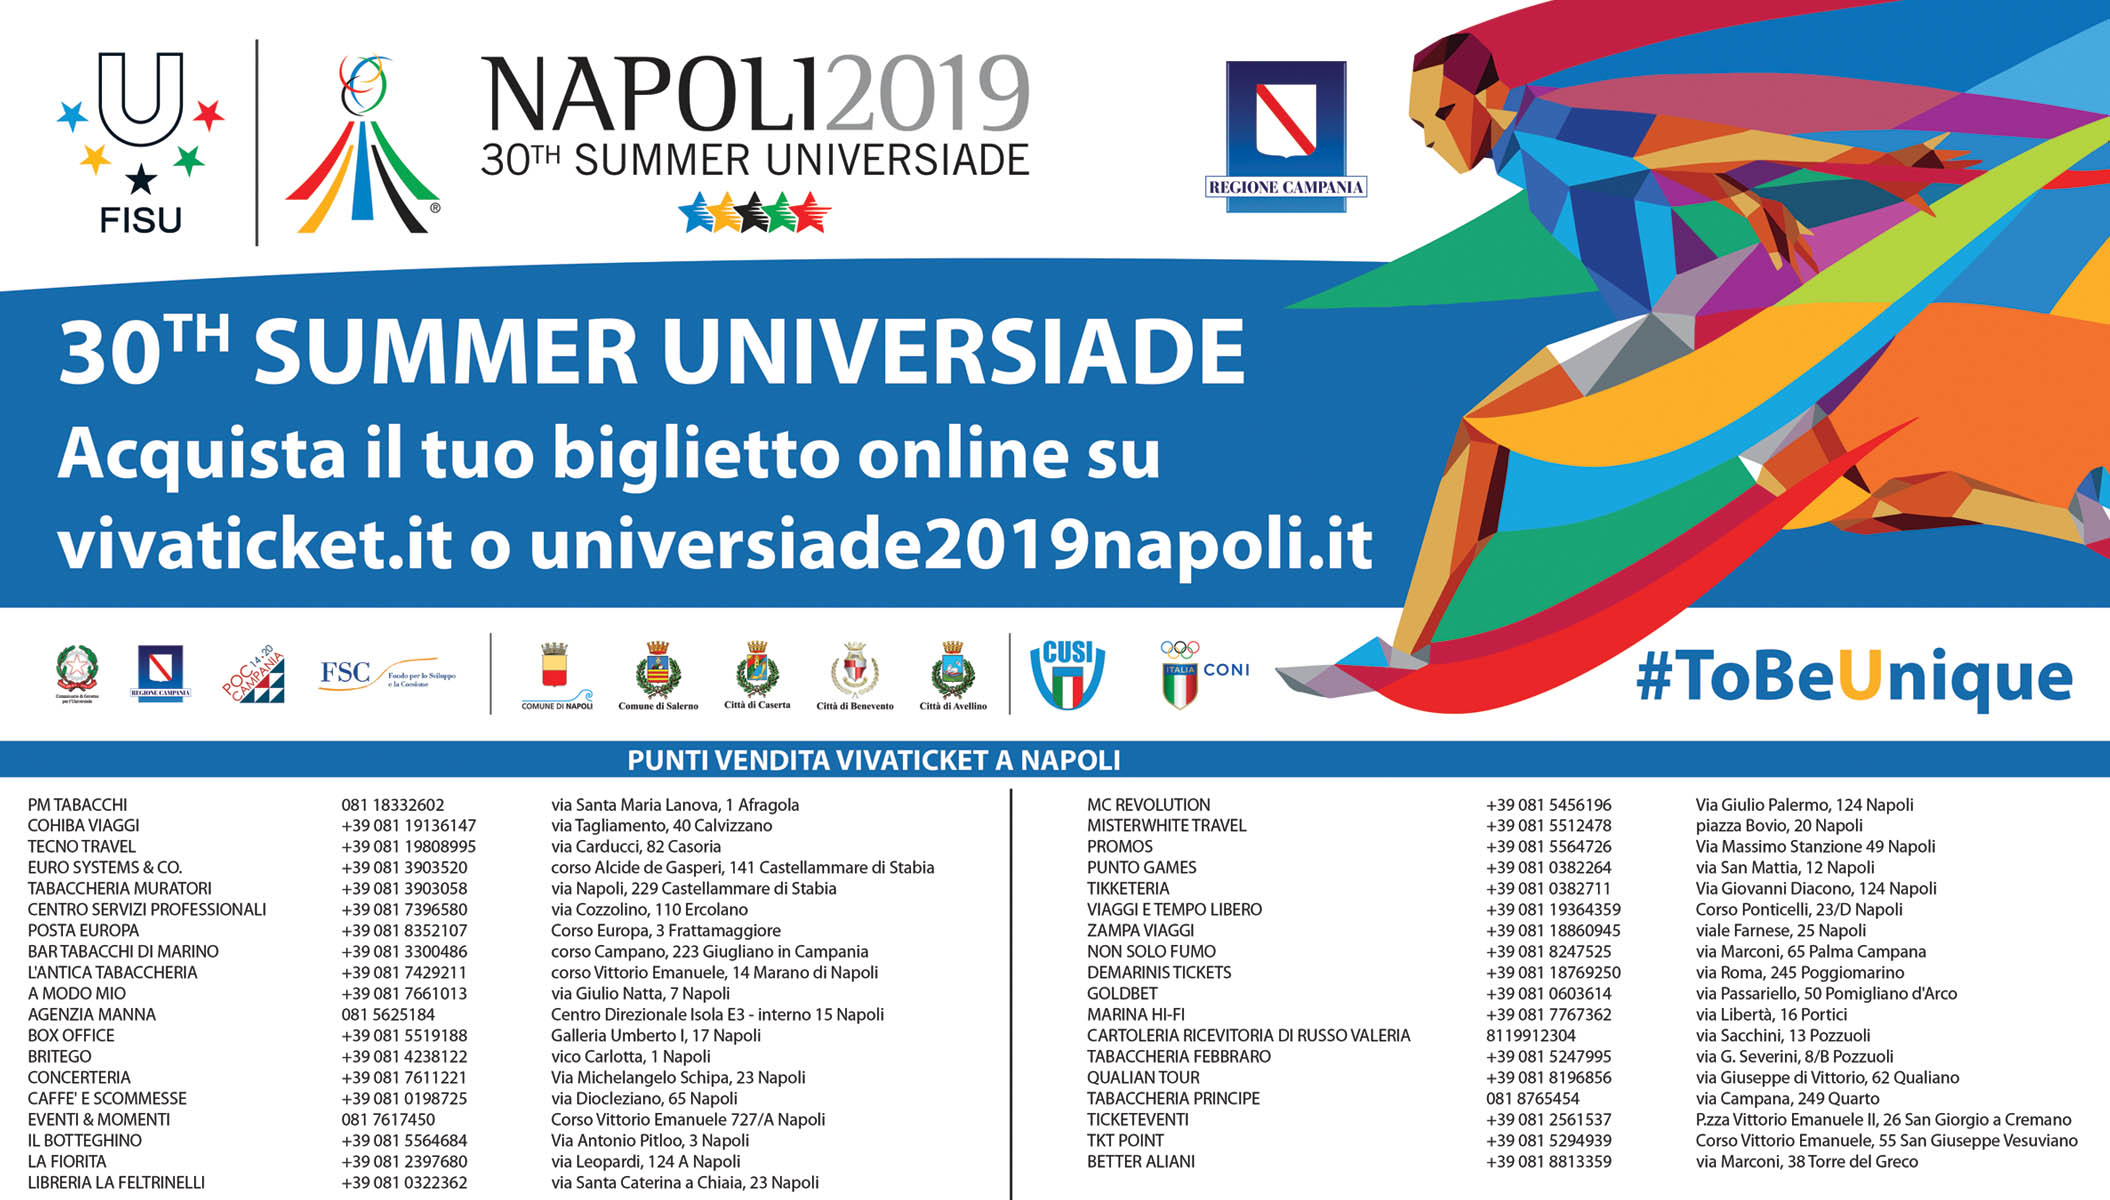 30th Summer Universiade Napoli 2019